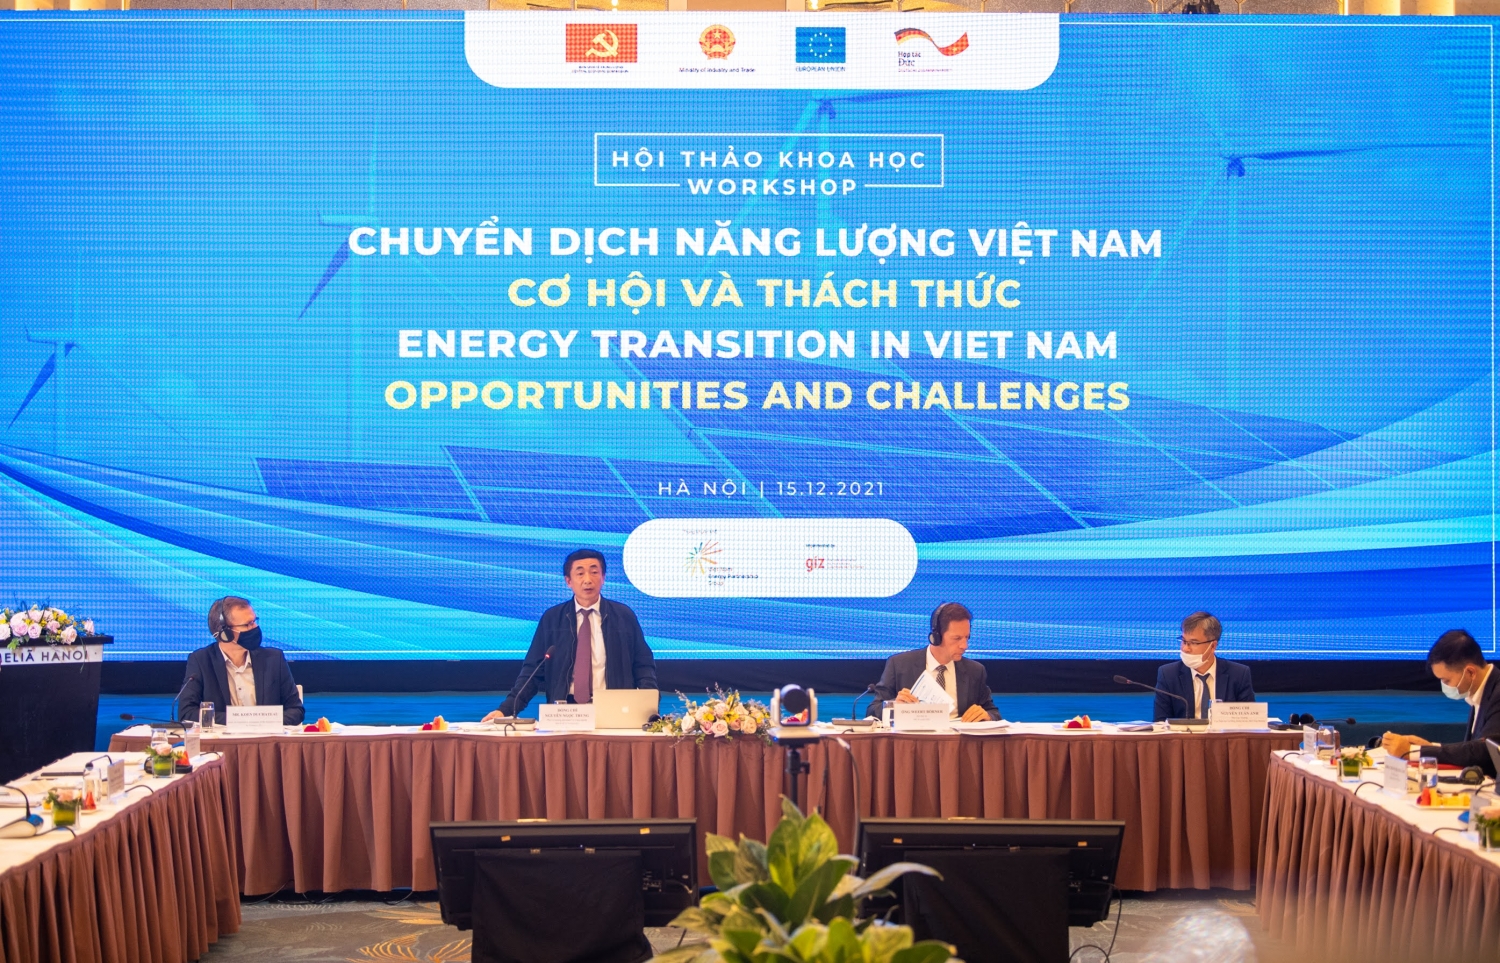 Chuyển dịch Năng lượng Việt Nam – cơ hội và thách thức